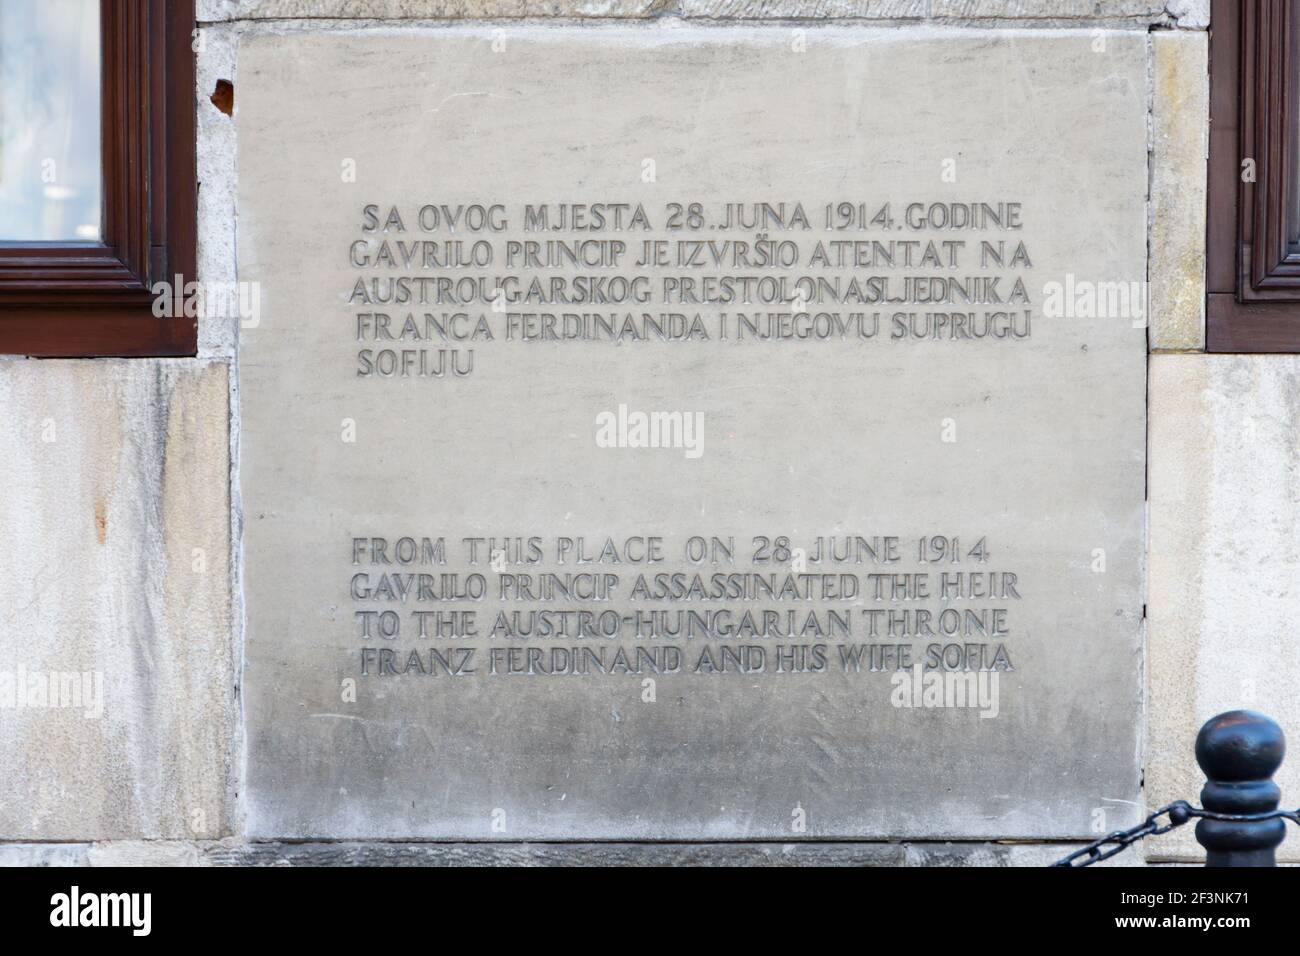 Plaque commémorative sur le site de l'assassinat de l'archiduc François Ferdinand et de sa femme Sophia. Sarajevo, Bosnie-Herzégovine. Début du WW1 Banque D'Images